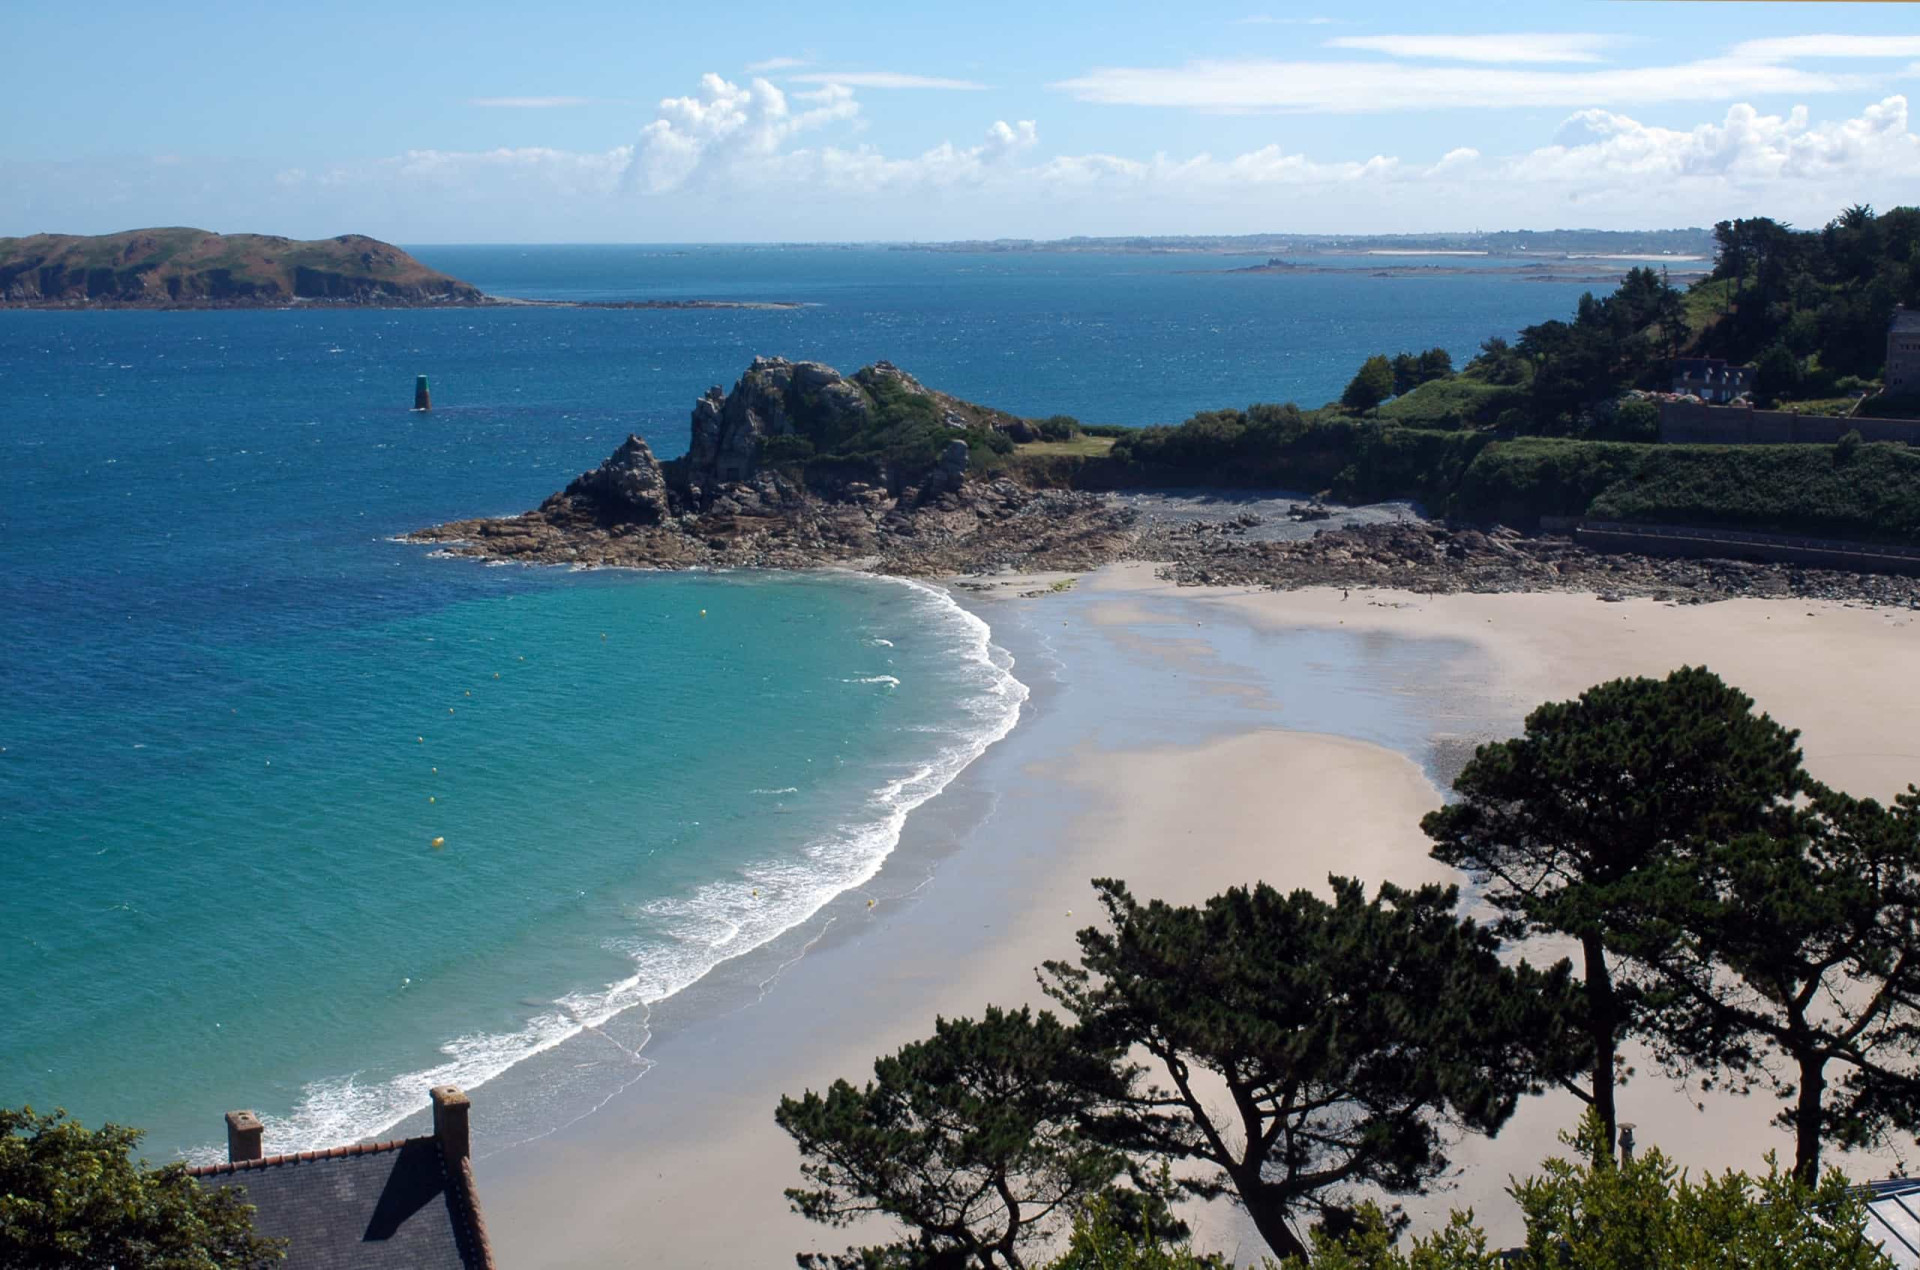 <p>Commençons notre itinéraire par les régions françaises plus au nord. Les plages de Bretagne n'ont rien à envier aux plus belles plages du sud du pays ! Admirez plutôt la beauté de cette plage dans la commune de Perros-Guirec, un réel paradis.</p><p><a href="https://www.msn.com/fr-fr/community/channel/vid-7xx8mnucu55yw63we9va2gwr7uihbxwc68fxqp25x6tg4ftibpra?cvid=94631541bc0f4f89bfd59158d696ad7e">Suivez-nous et accédez tous les jours à du contenu exclusif</a></p>